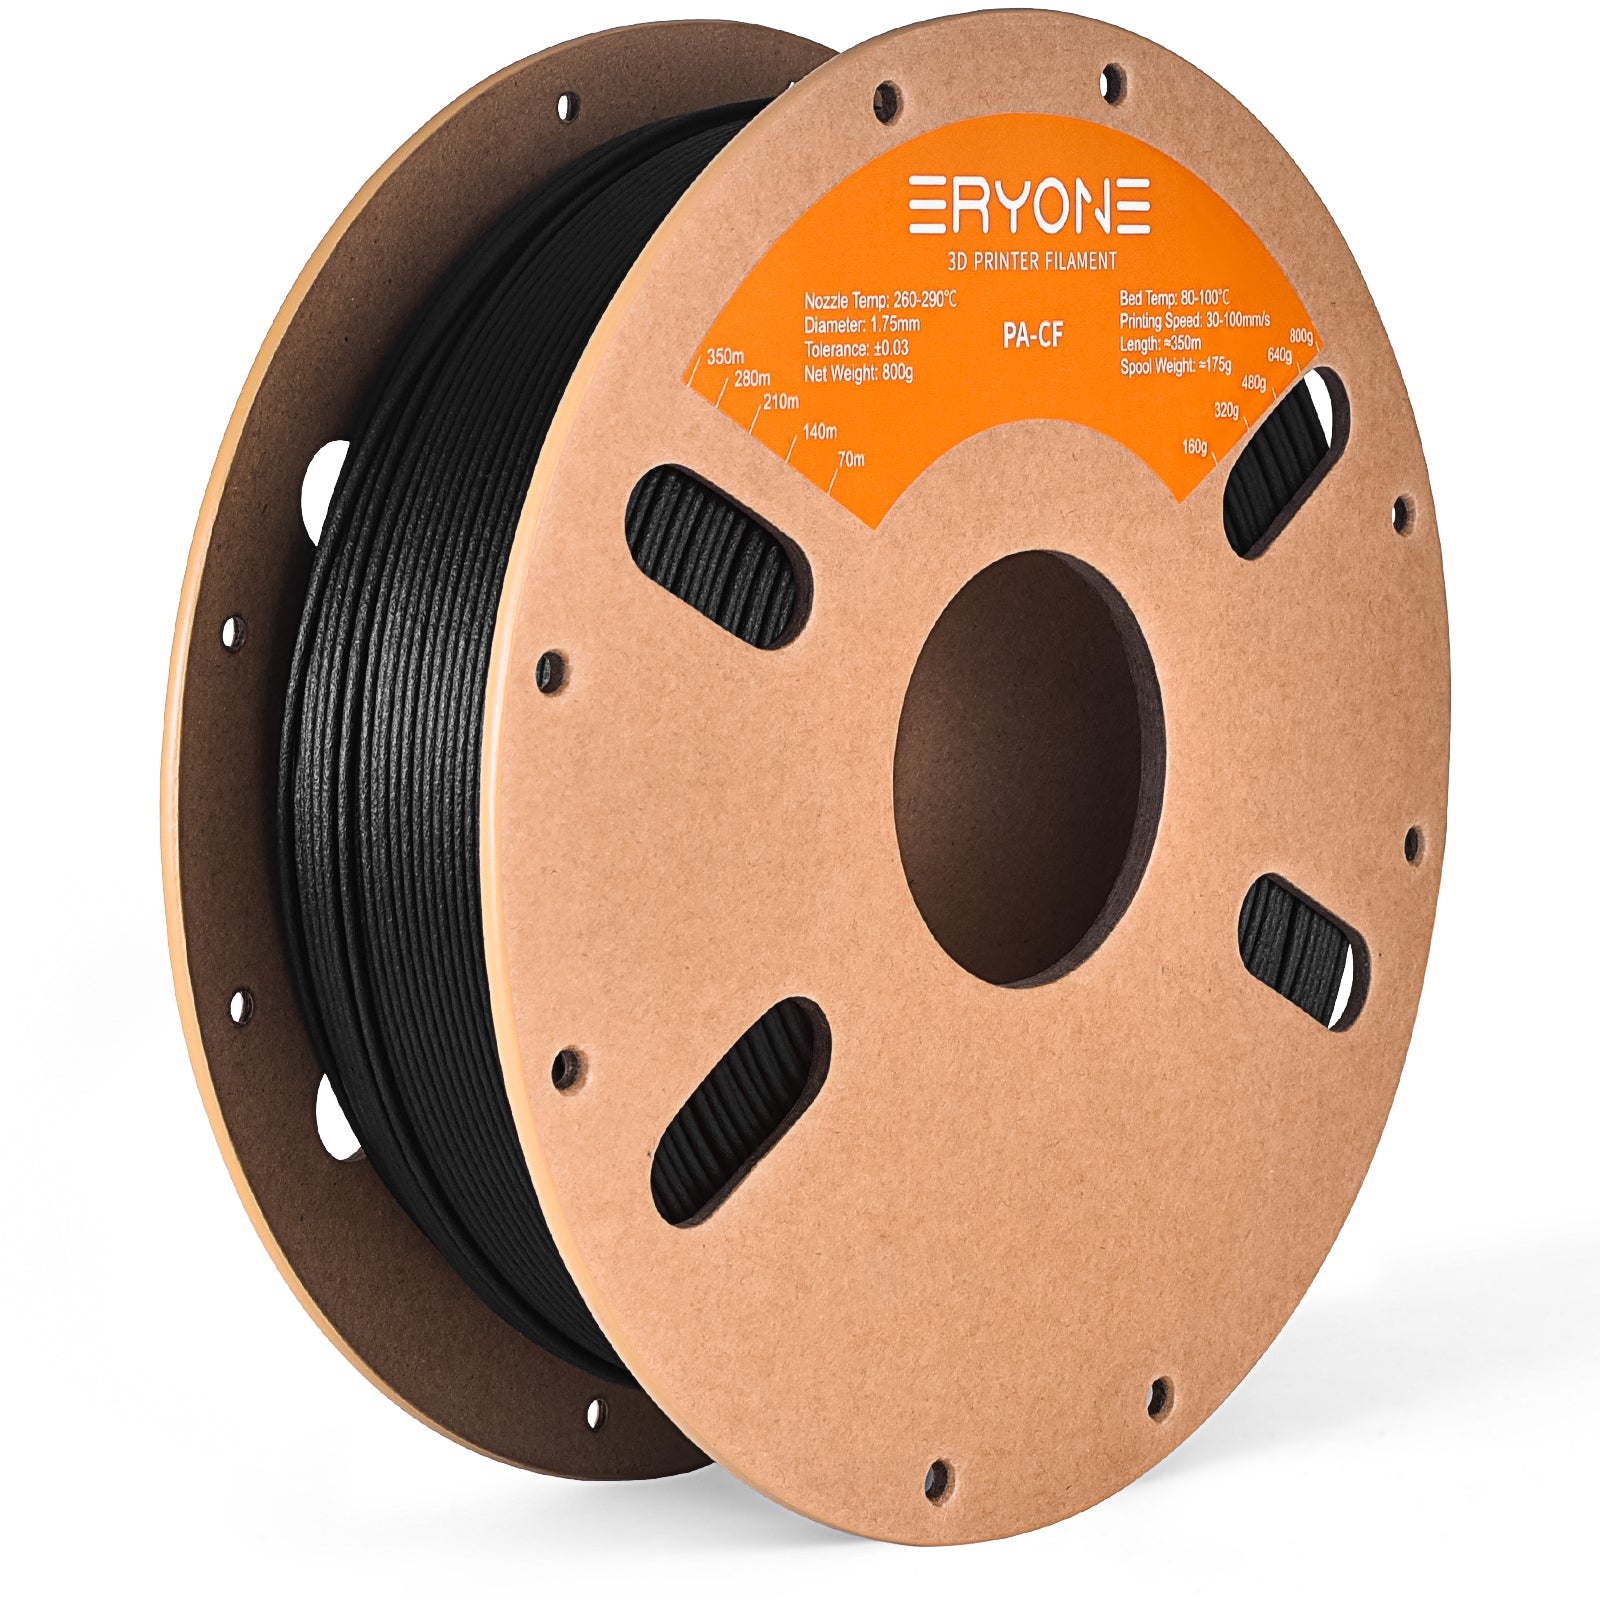 ERYONE Nylon Filament, 1.75mm ±0.03mm Filament For 3D Printer, 1KG(2.2LBS)/ Spool